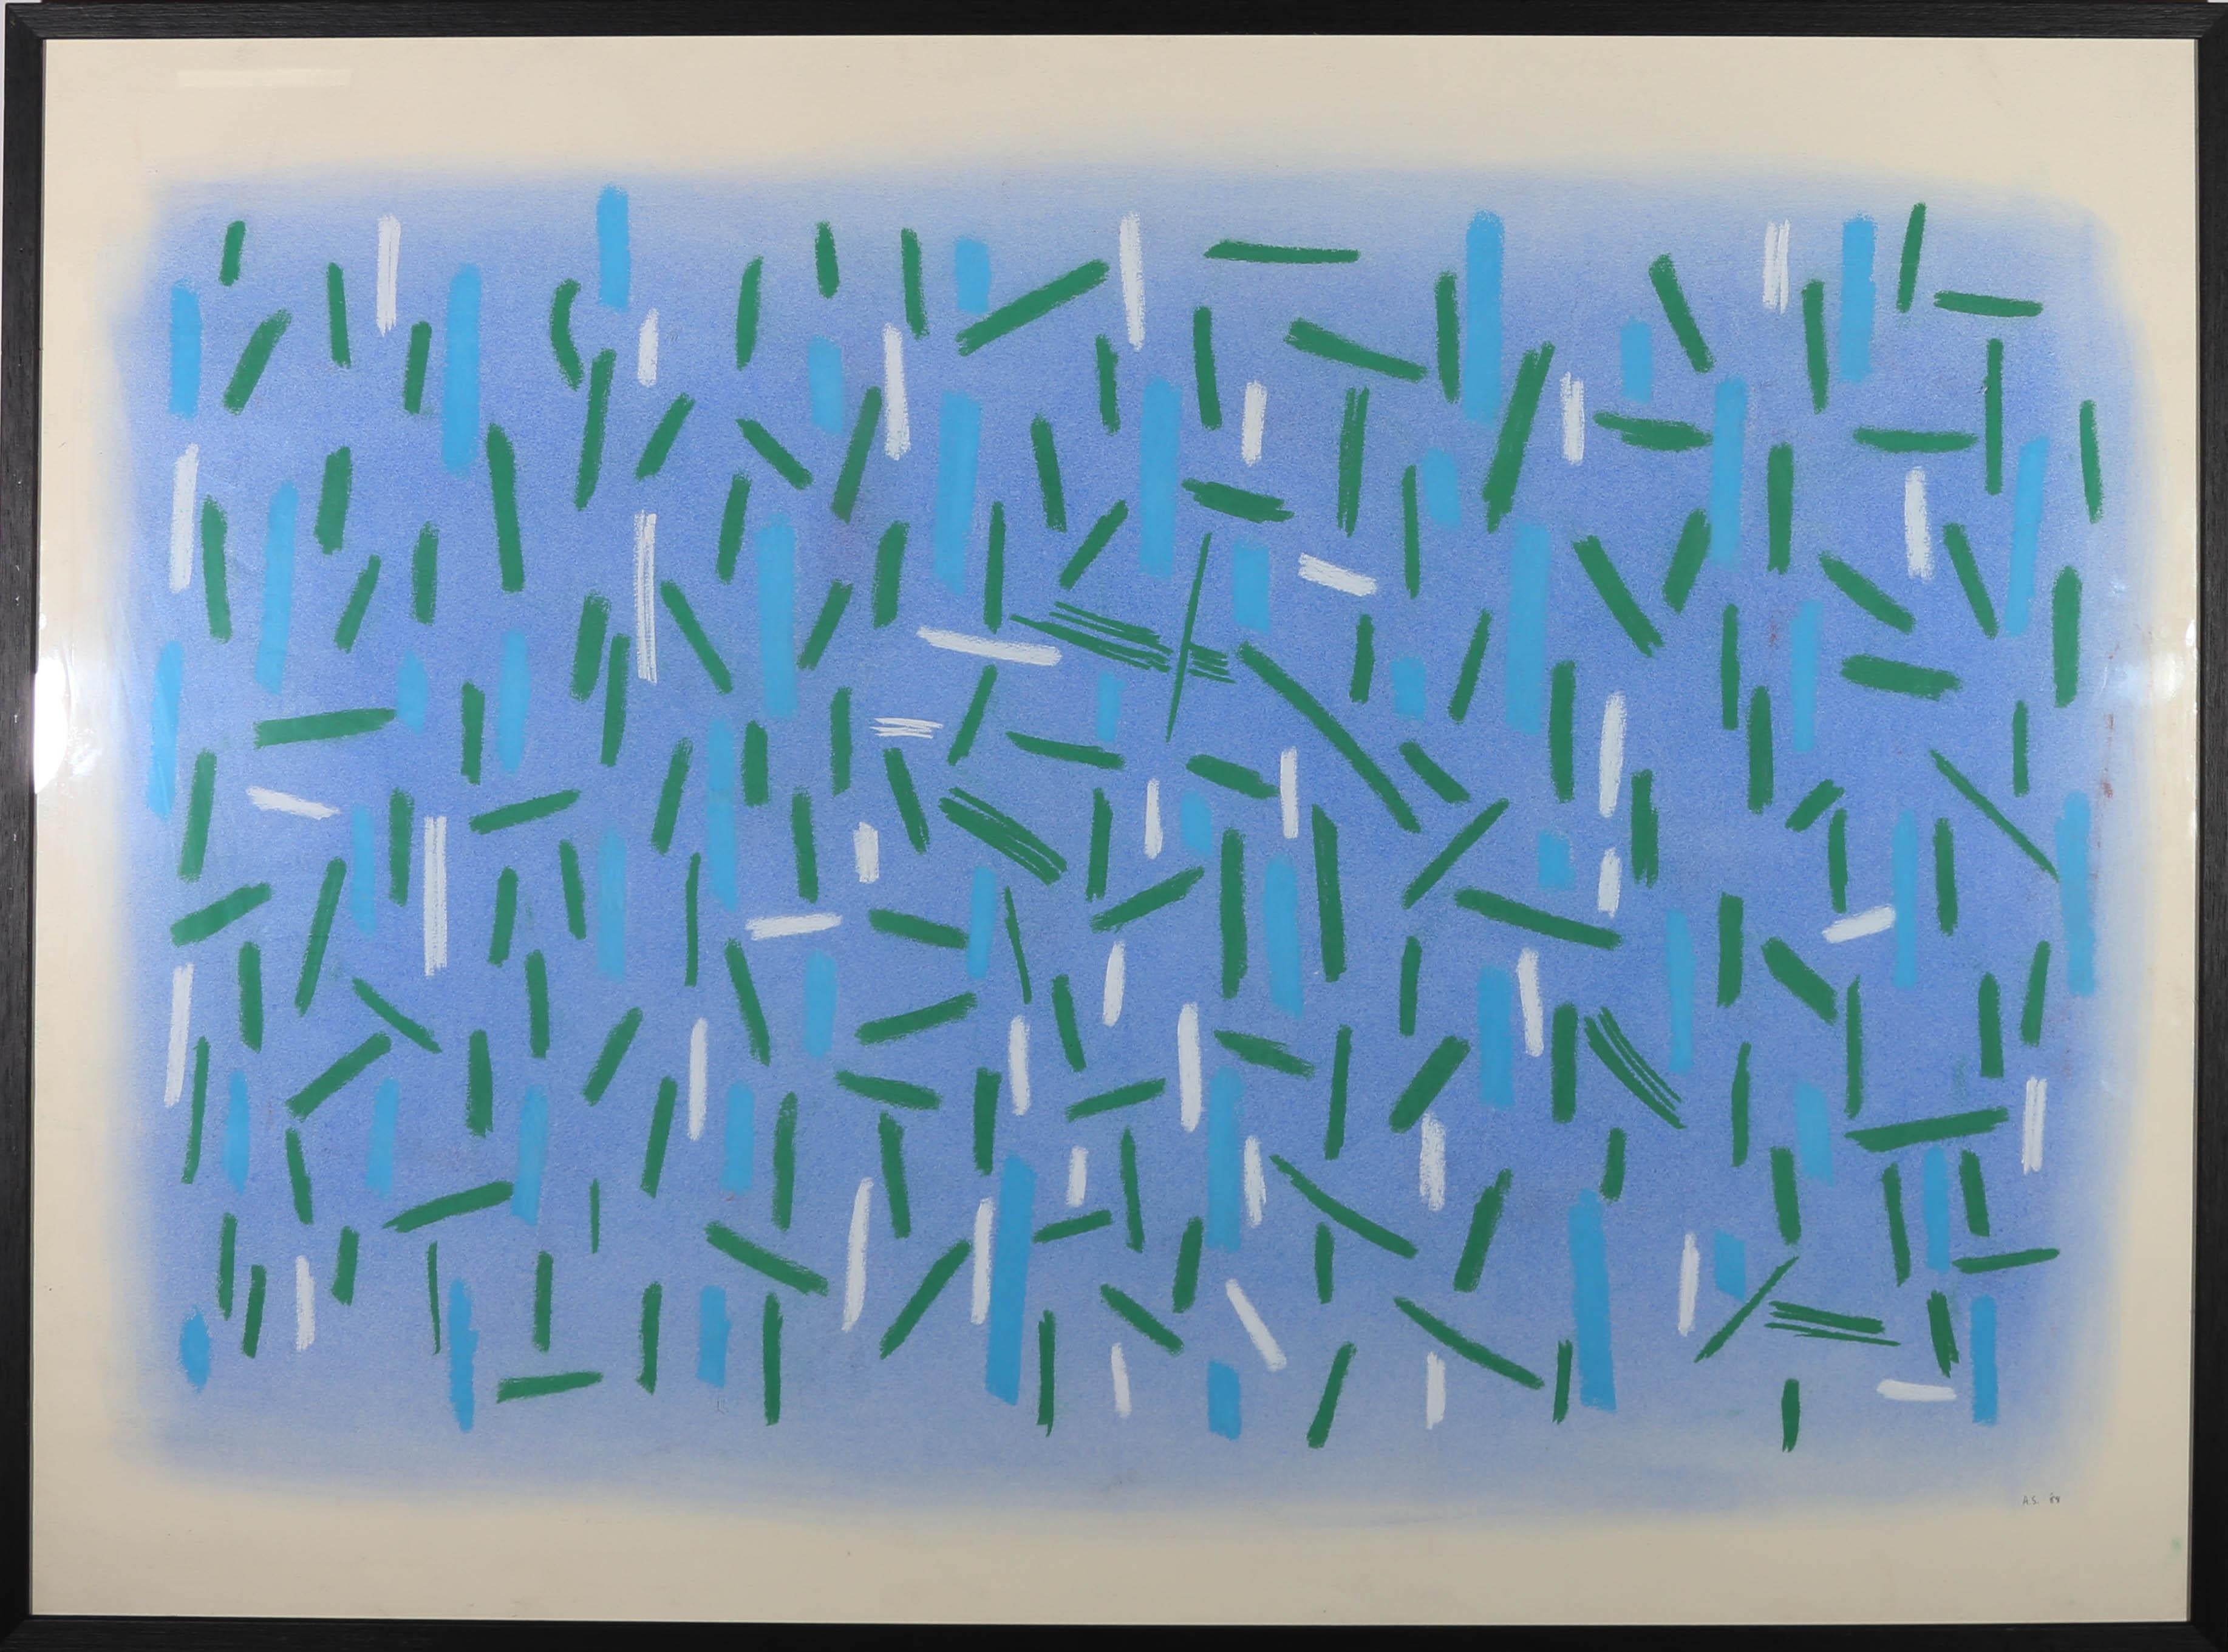 Diese auffällige, großformatige abstrakte Studie zeigt aufblitzende blaue, weiße und grüne Pastelllinien vor einem blau verwaschenen Hintergrund. Signiert mit Initialen und datiert unten rechts. Präsentiert in einem modernen, schwarz lackierten